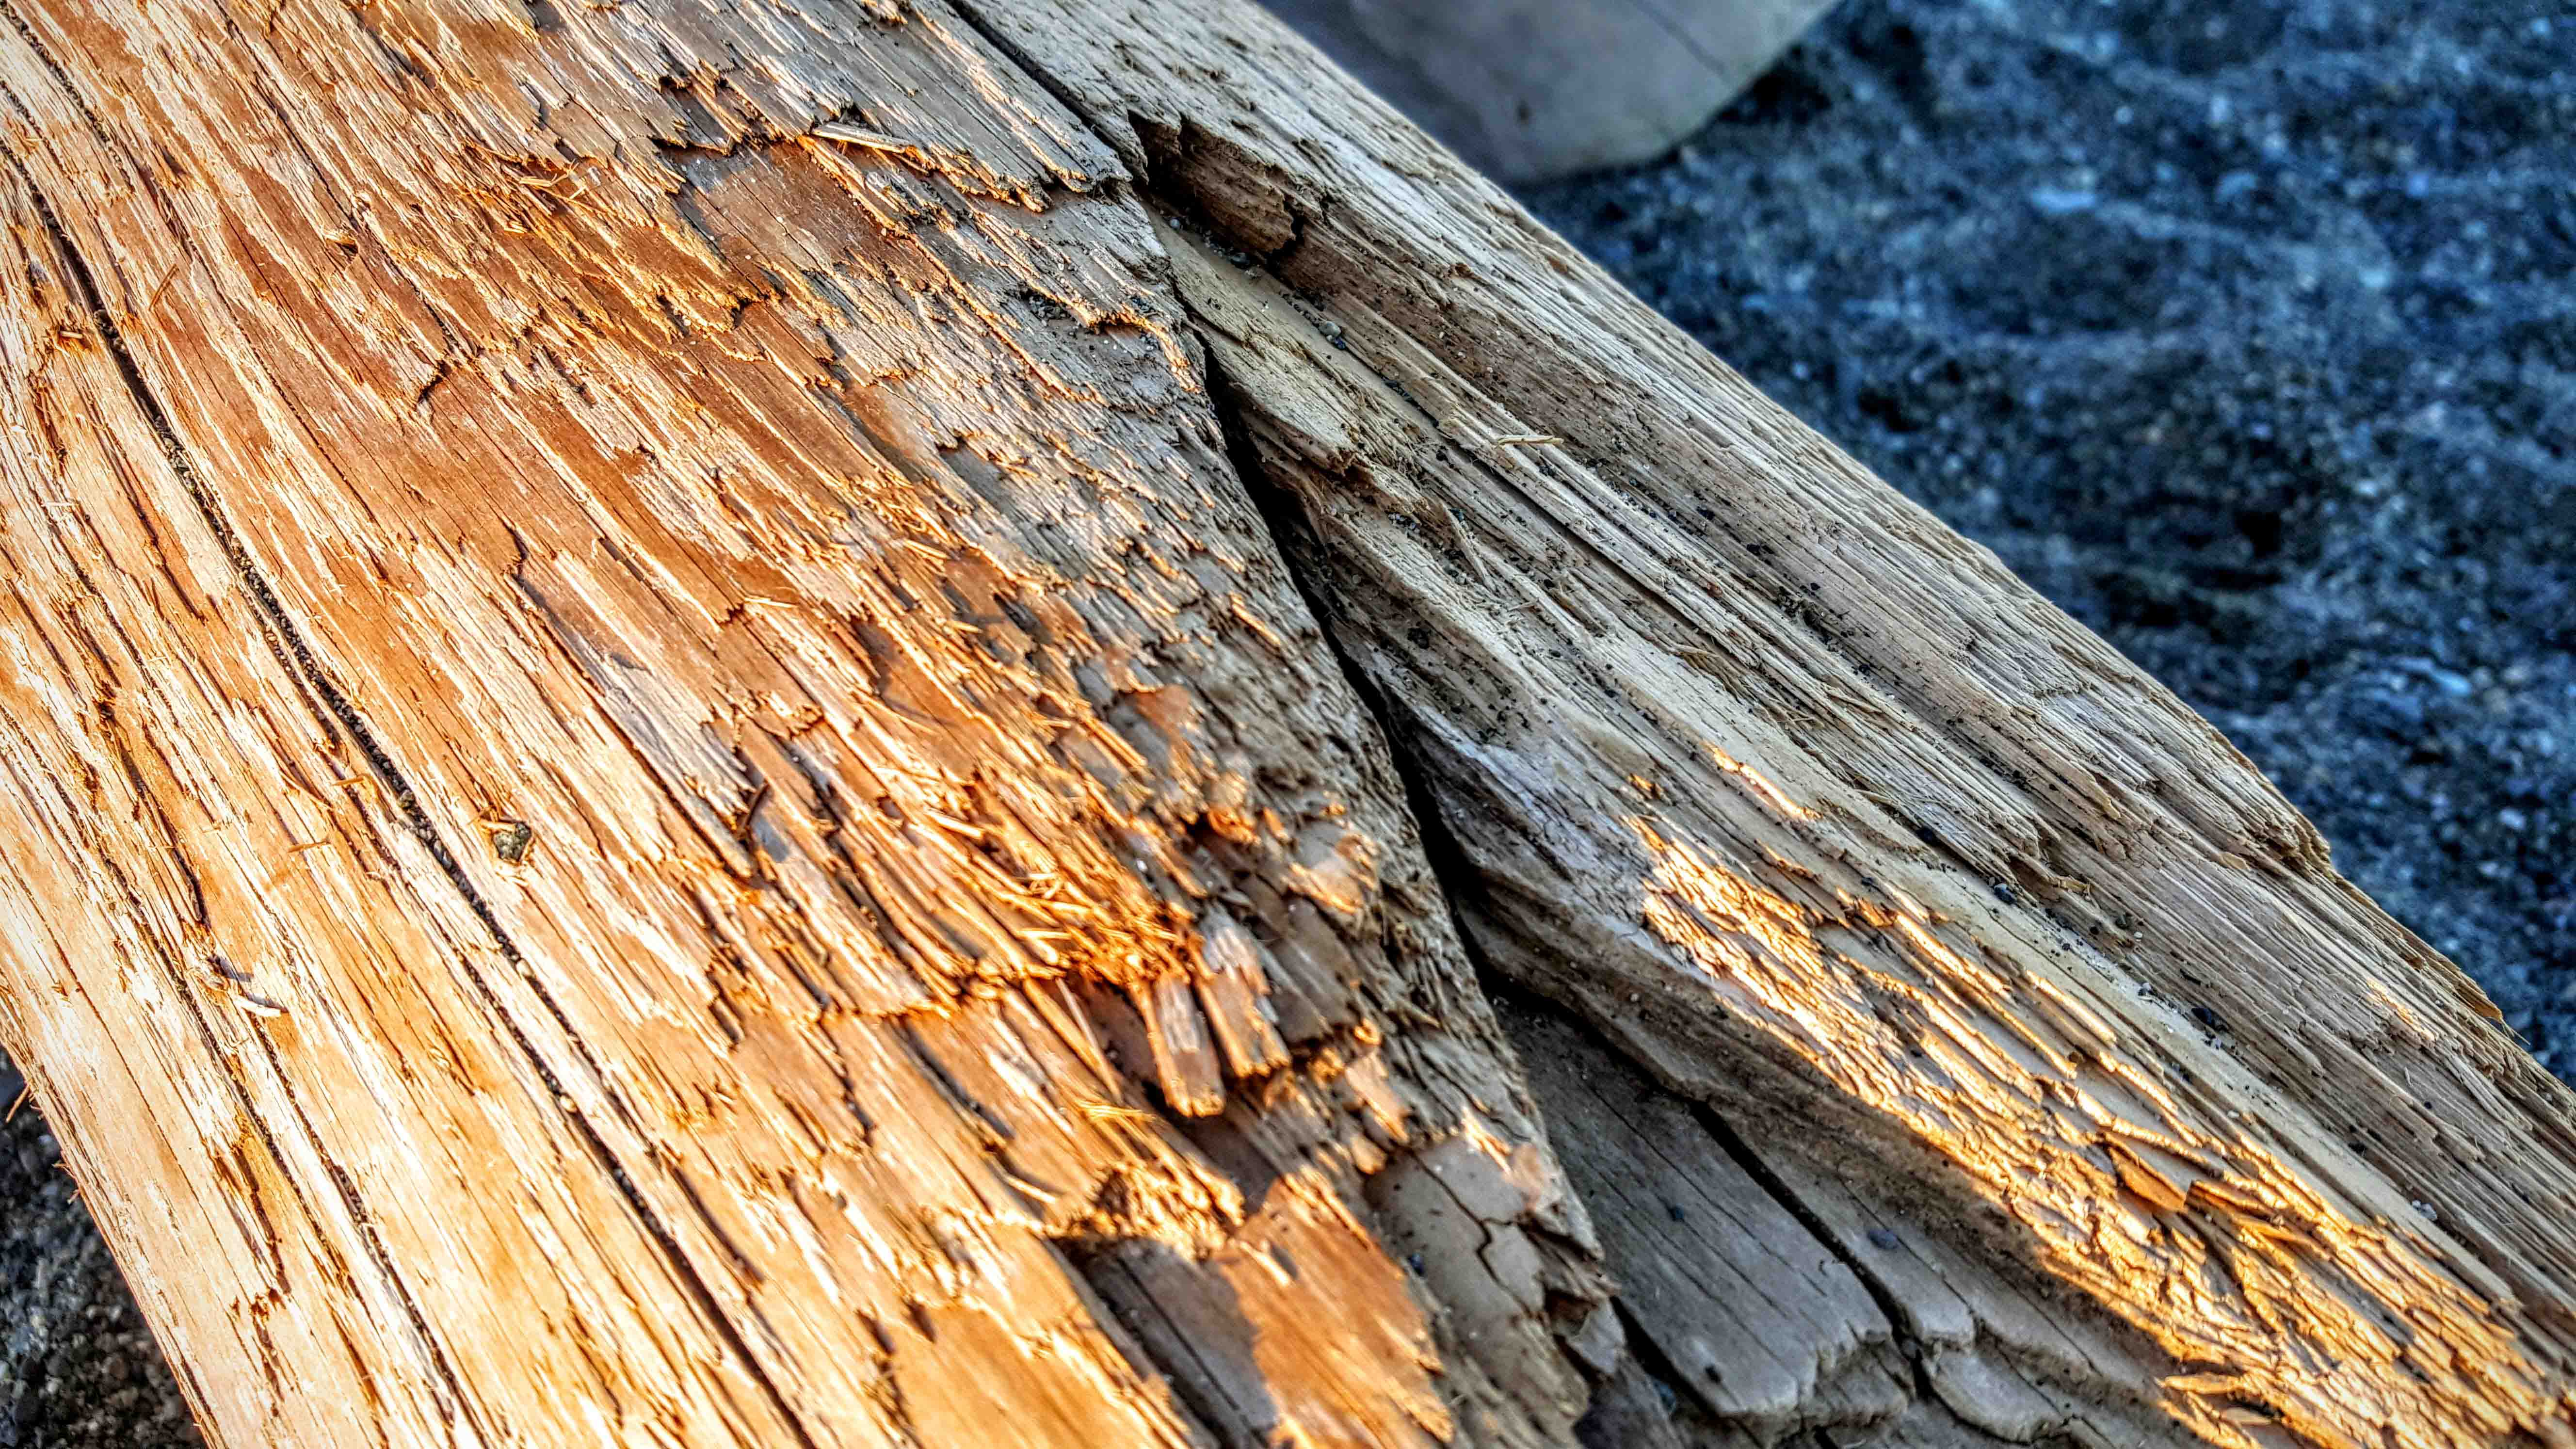 Logs at the beach